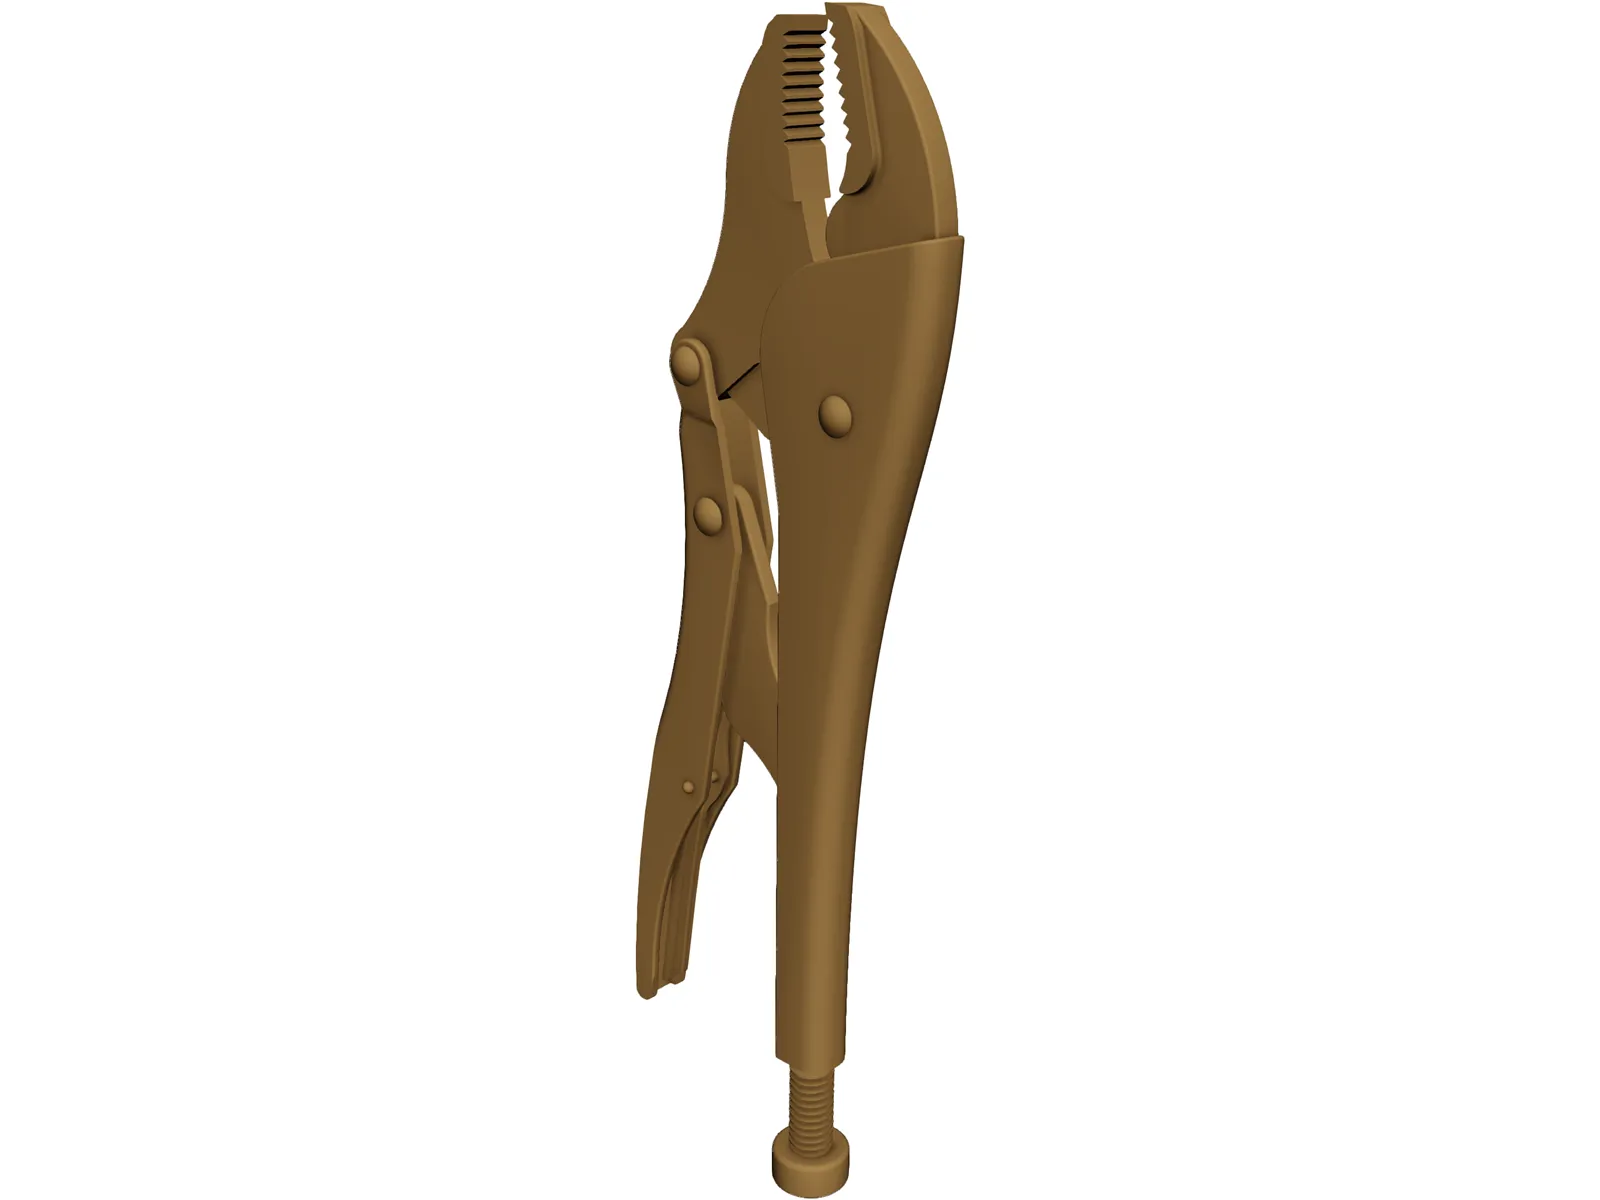 Vice Grip Plier 3D Model